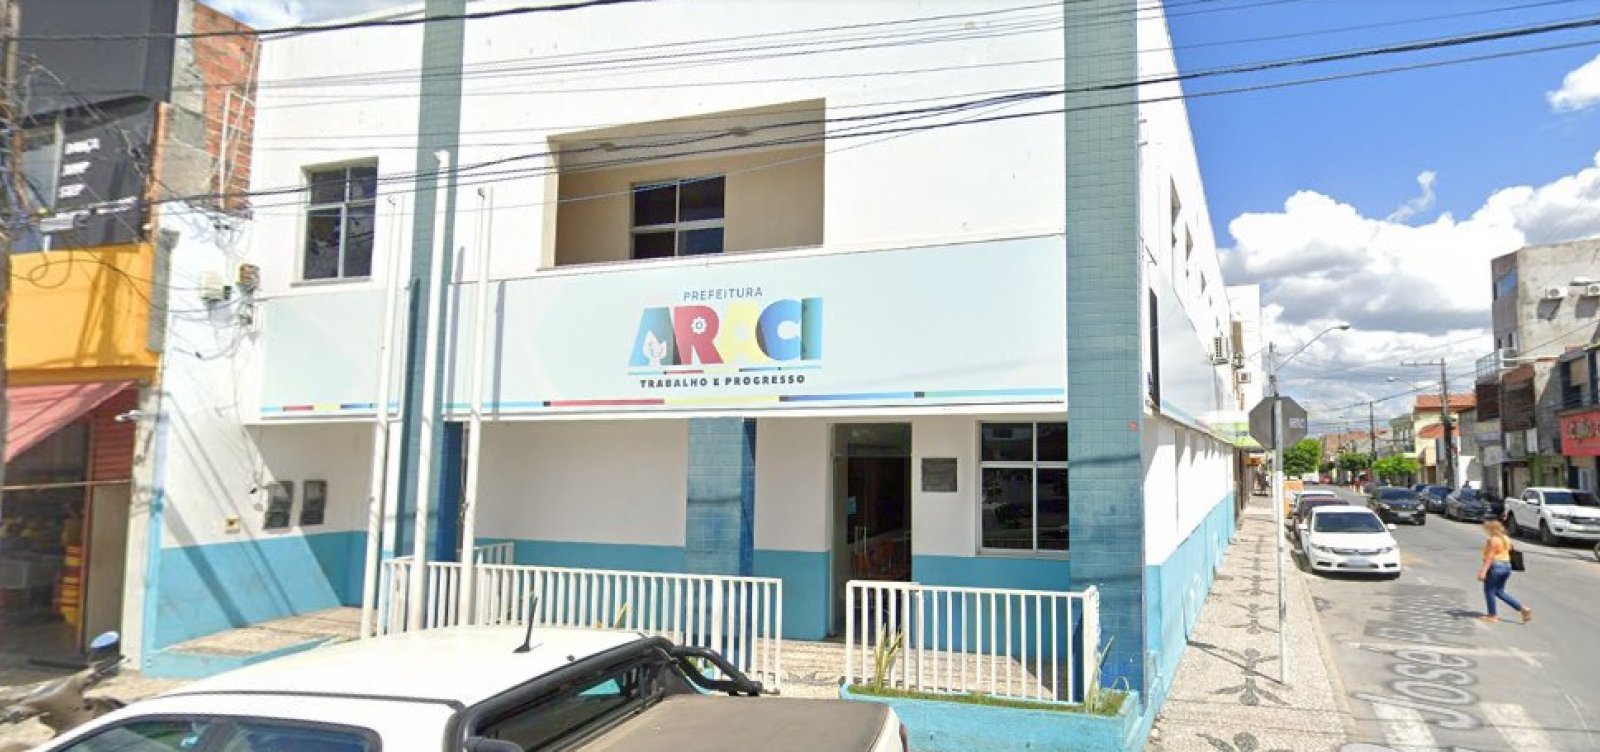 Servidores de Araci são exonerados após vazamento de mensagens com cunho homofóbico